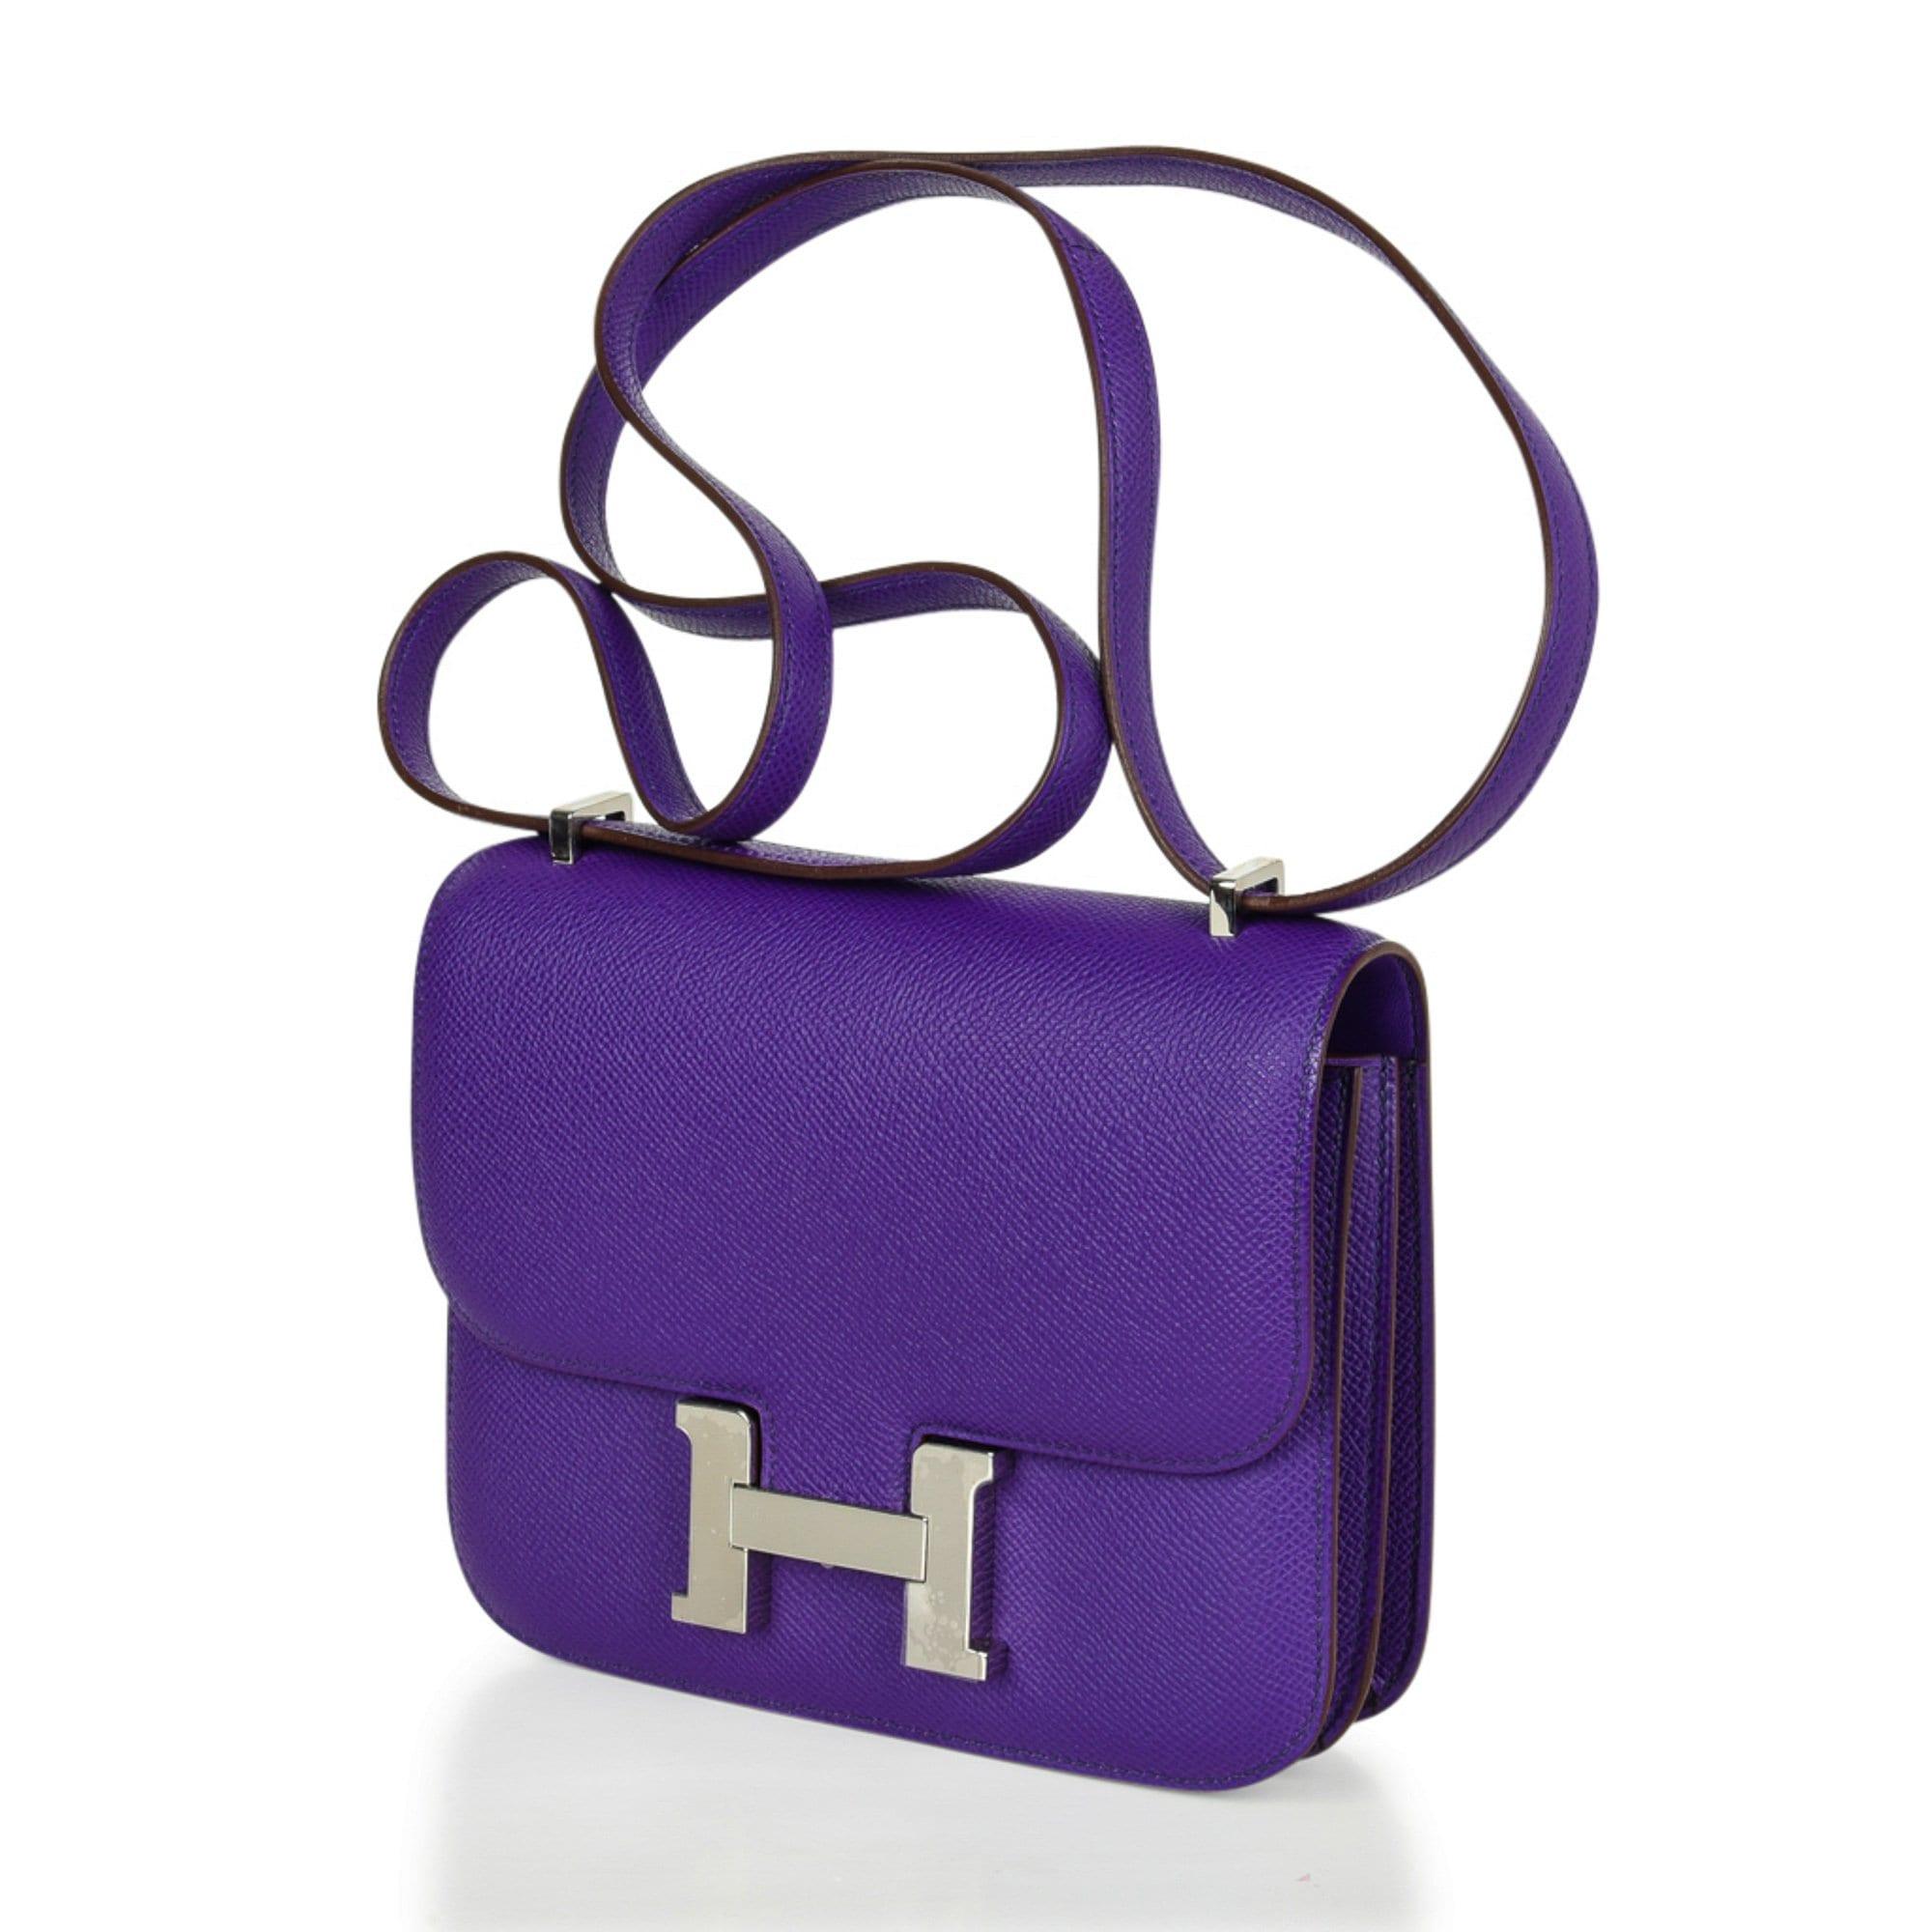 Hermès Constance bag  Hermes constance bag, Hermes handbags, Hermes  constance